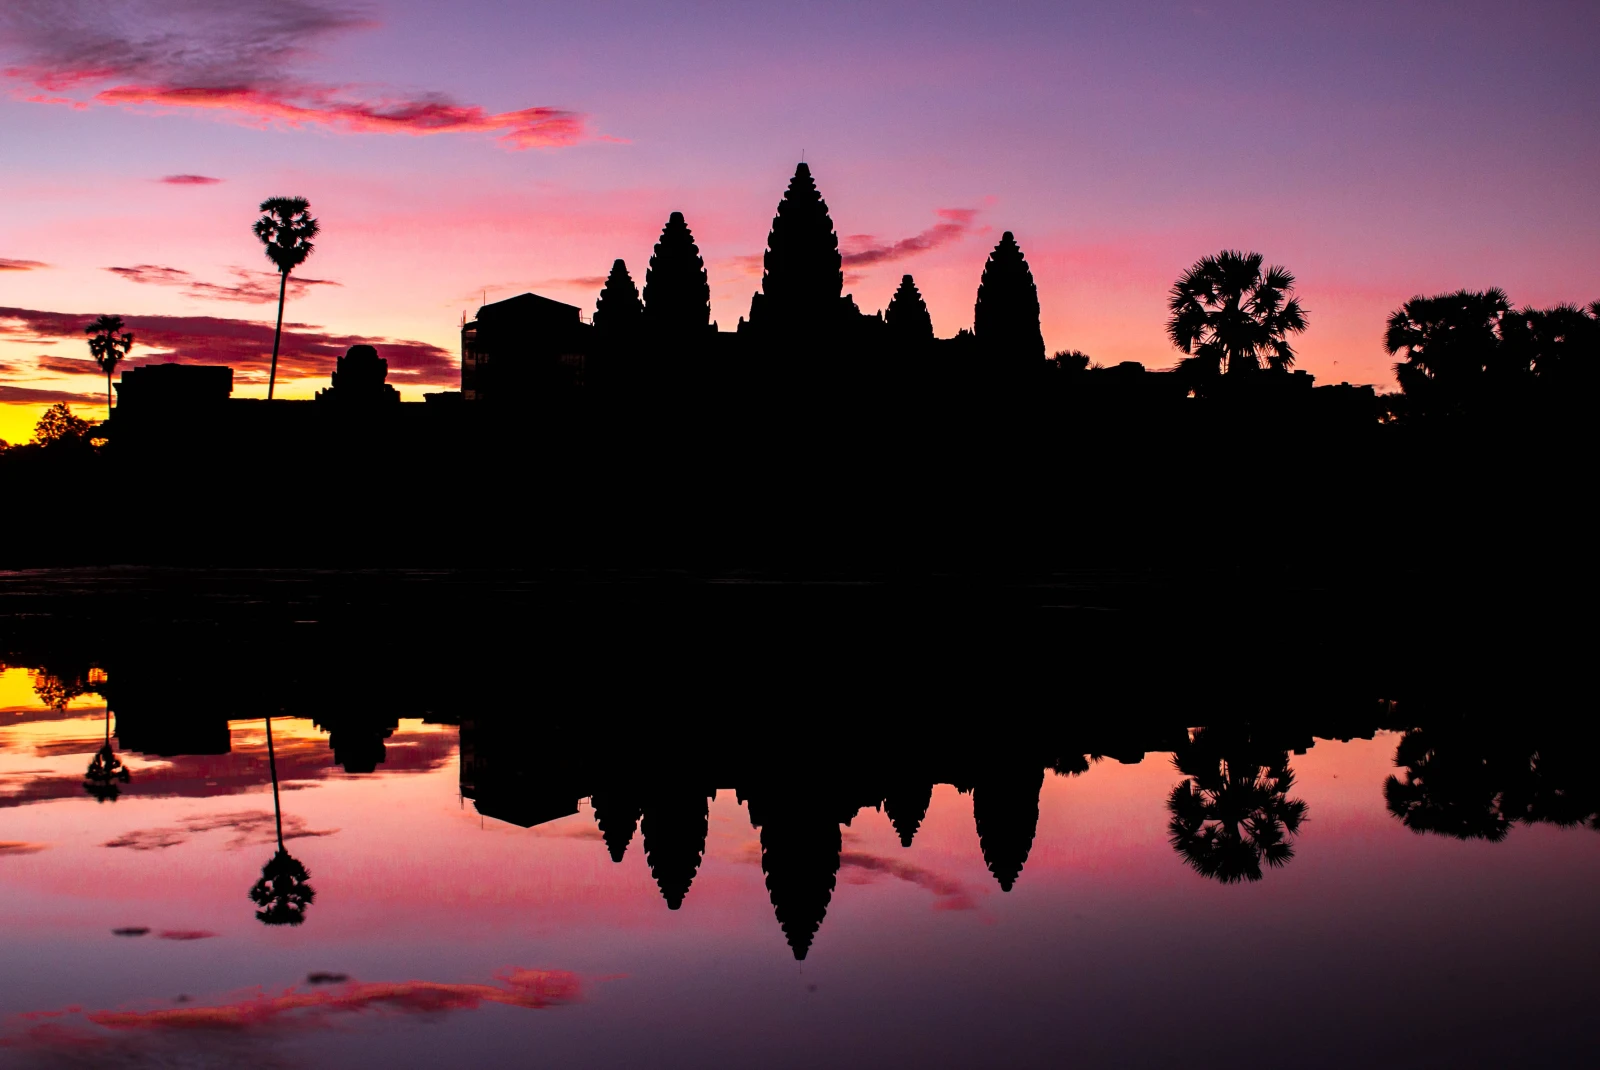 A 3-Day Itinerary of Siem Reap - Day 3: Angkor Wat & Angkor Thom